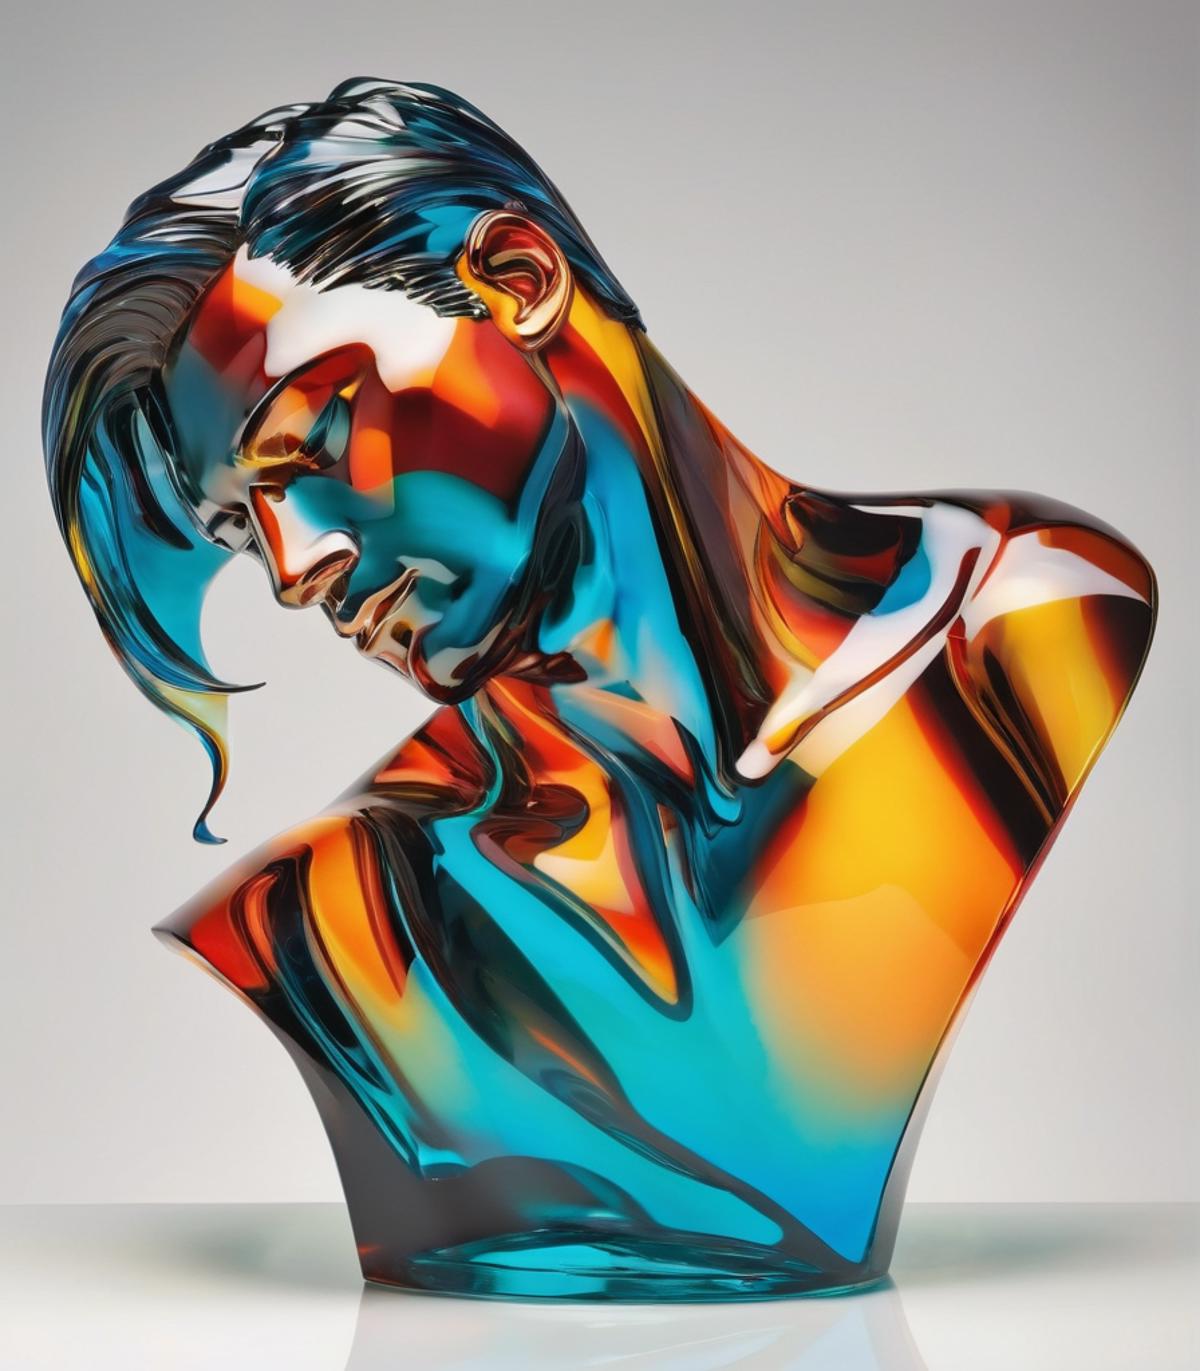 Glass Sculptures image by allendimetri